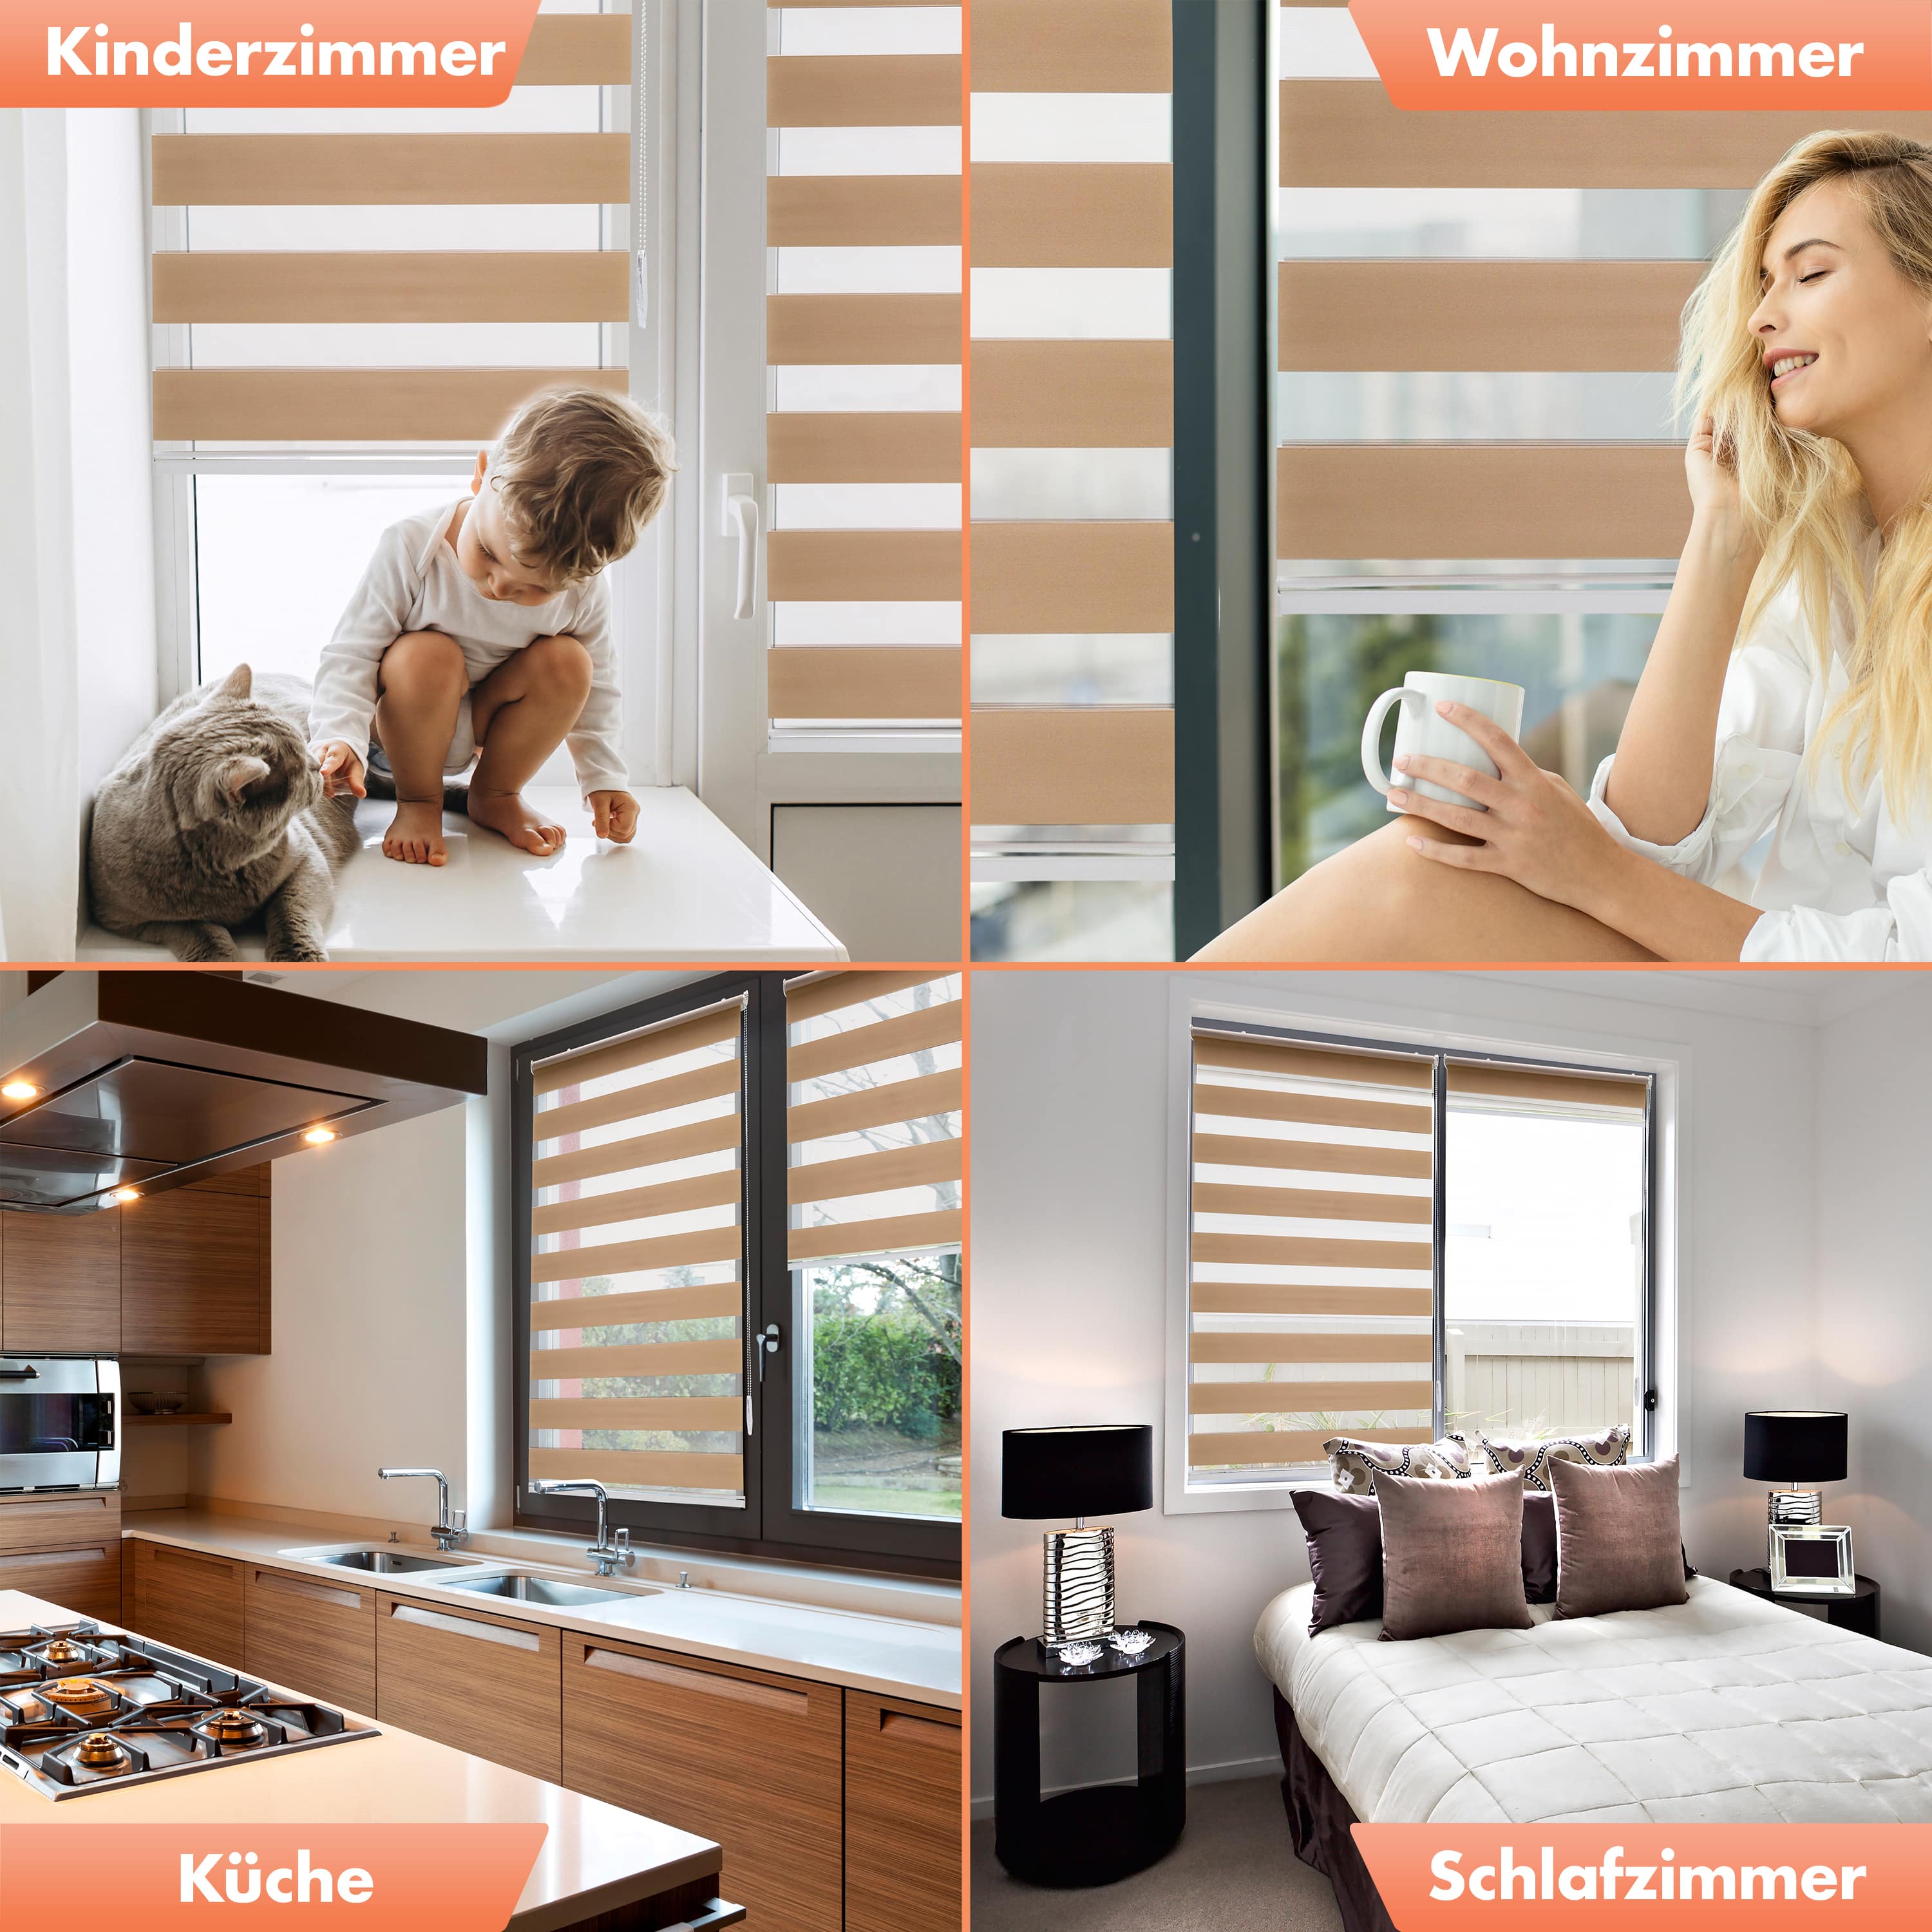 Doppelrollo ohne Bohren - Beige / Sand - 3in1 - für Fenster, Wand & De